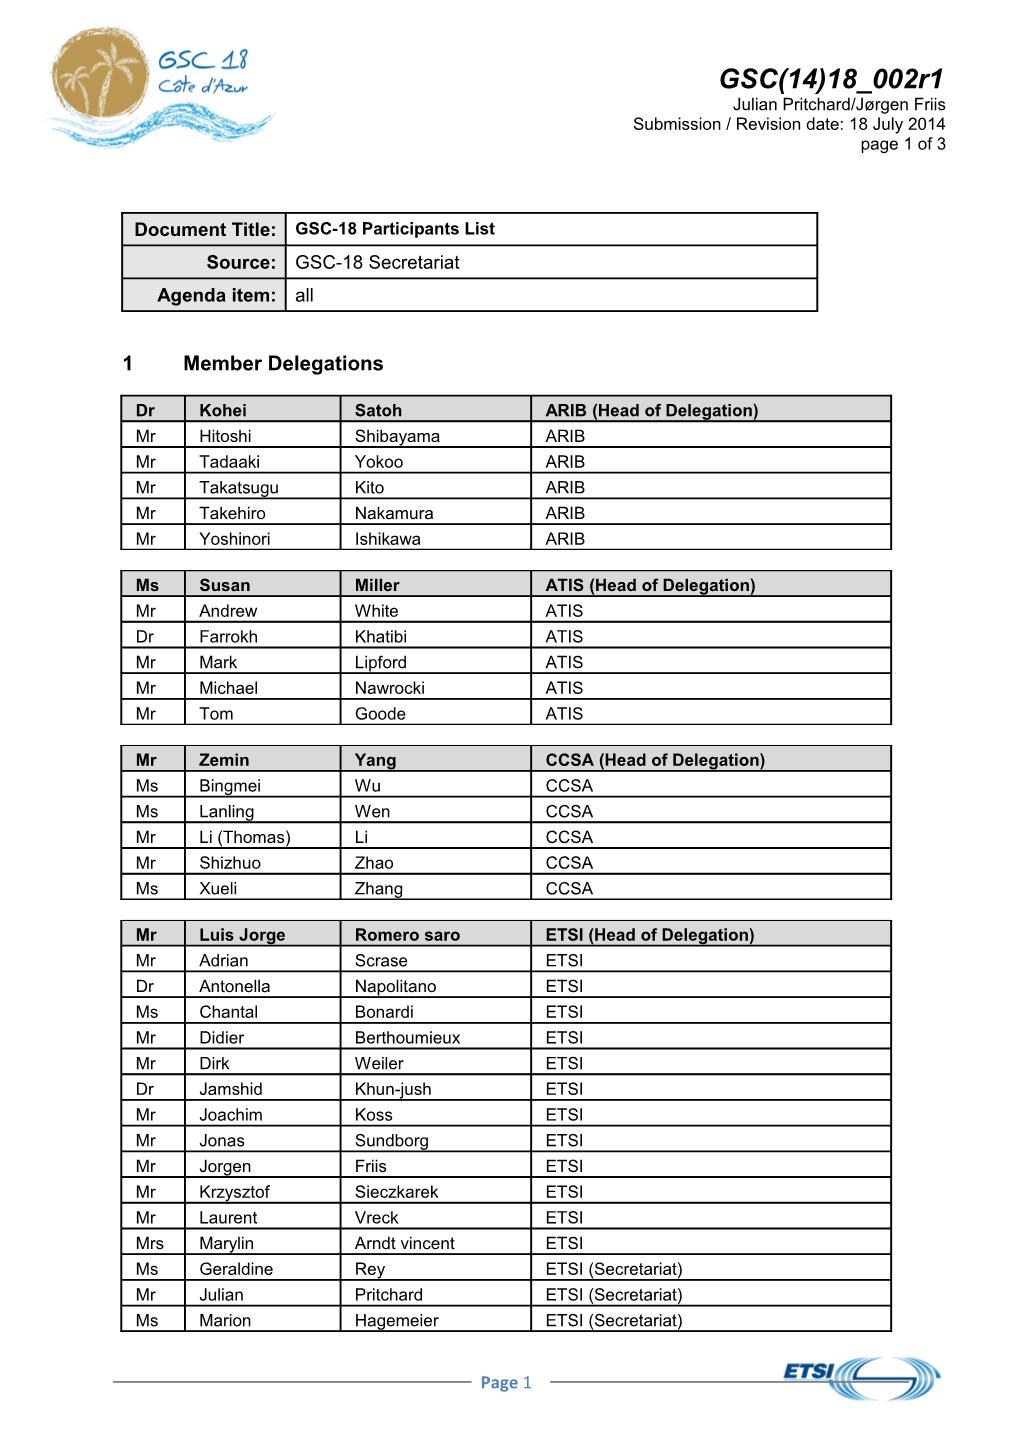 GSC(14)18 002 -Participants List